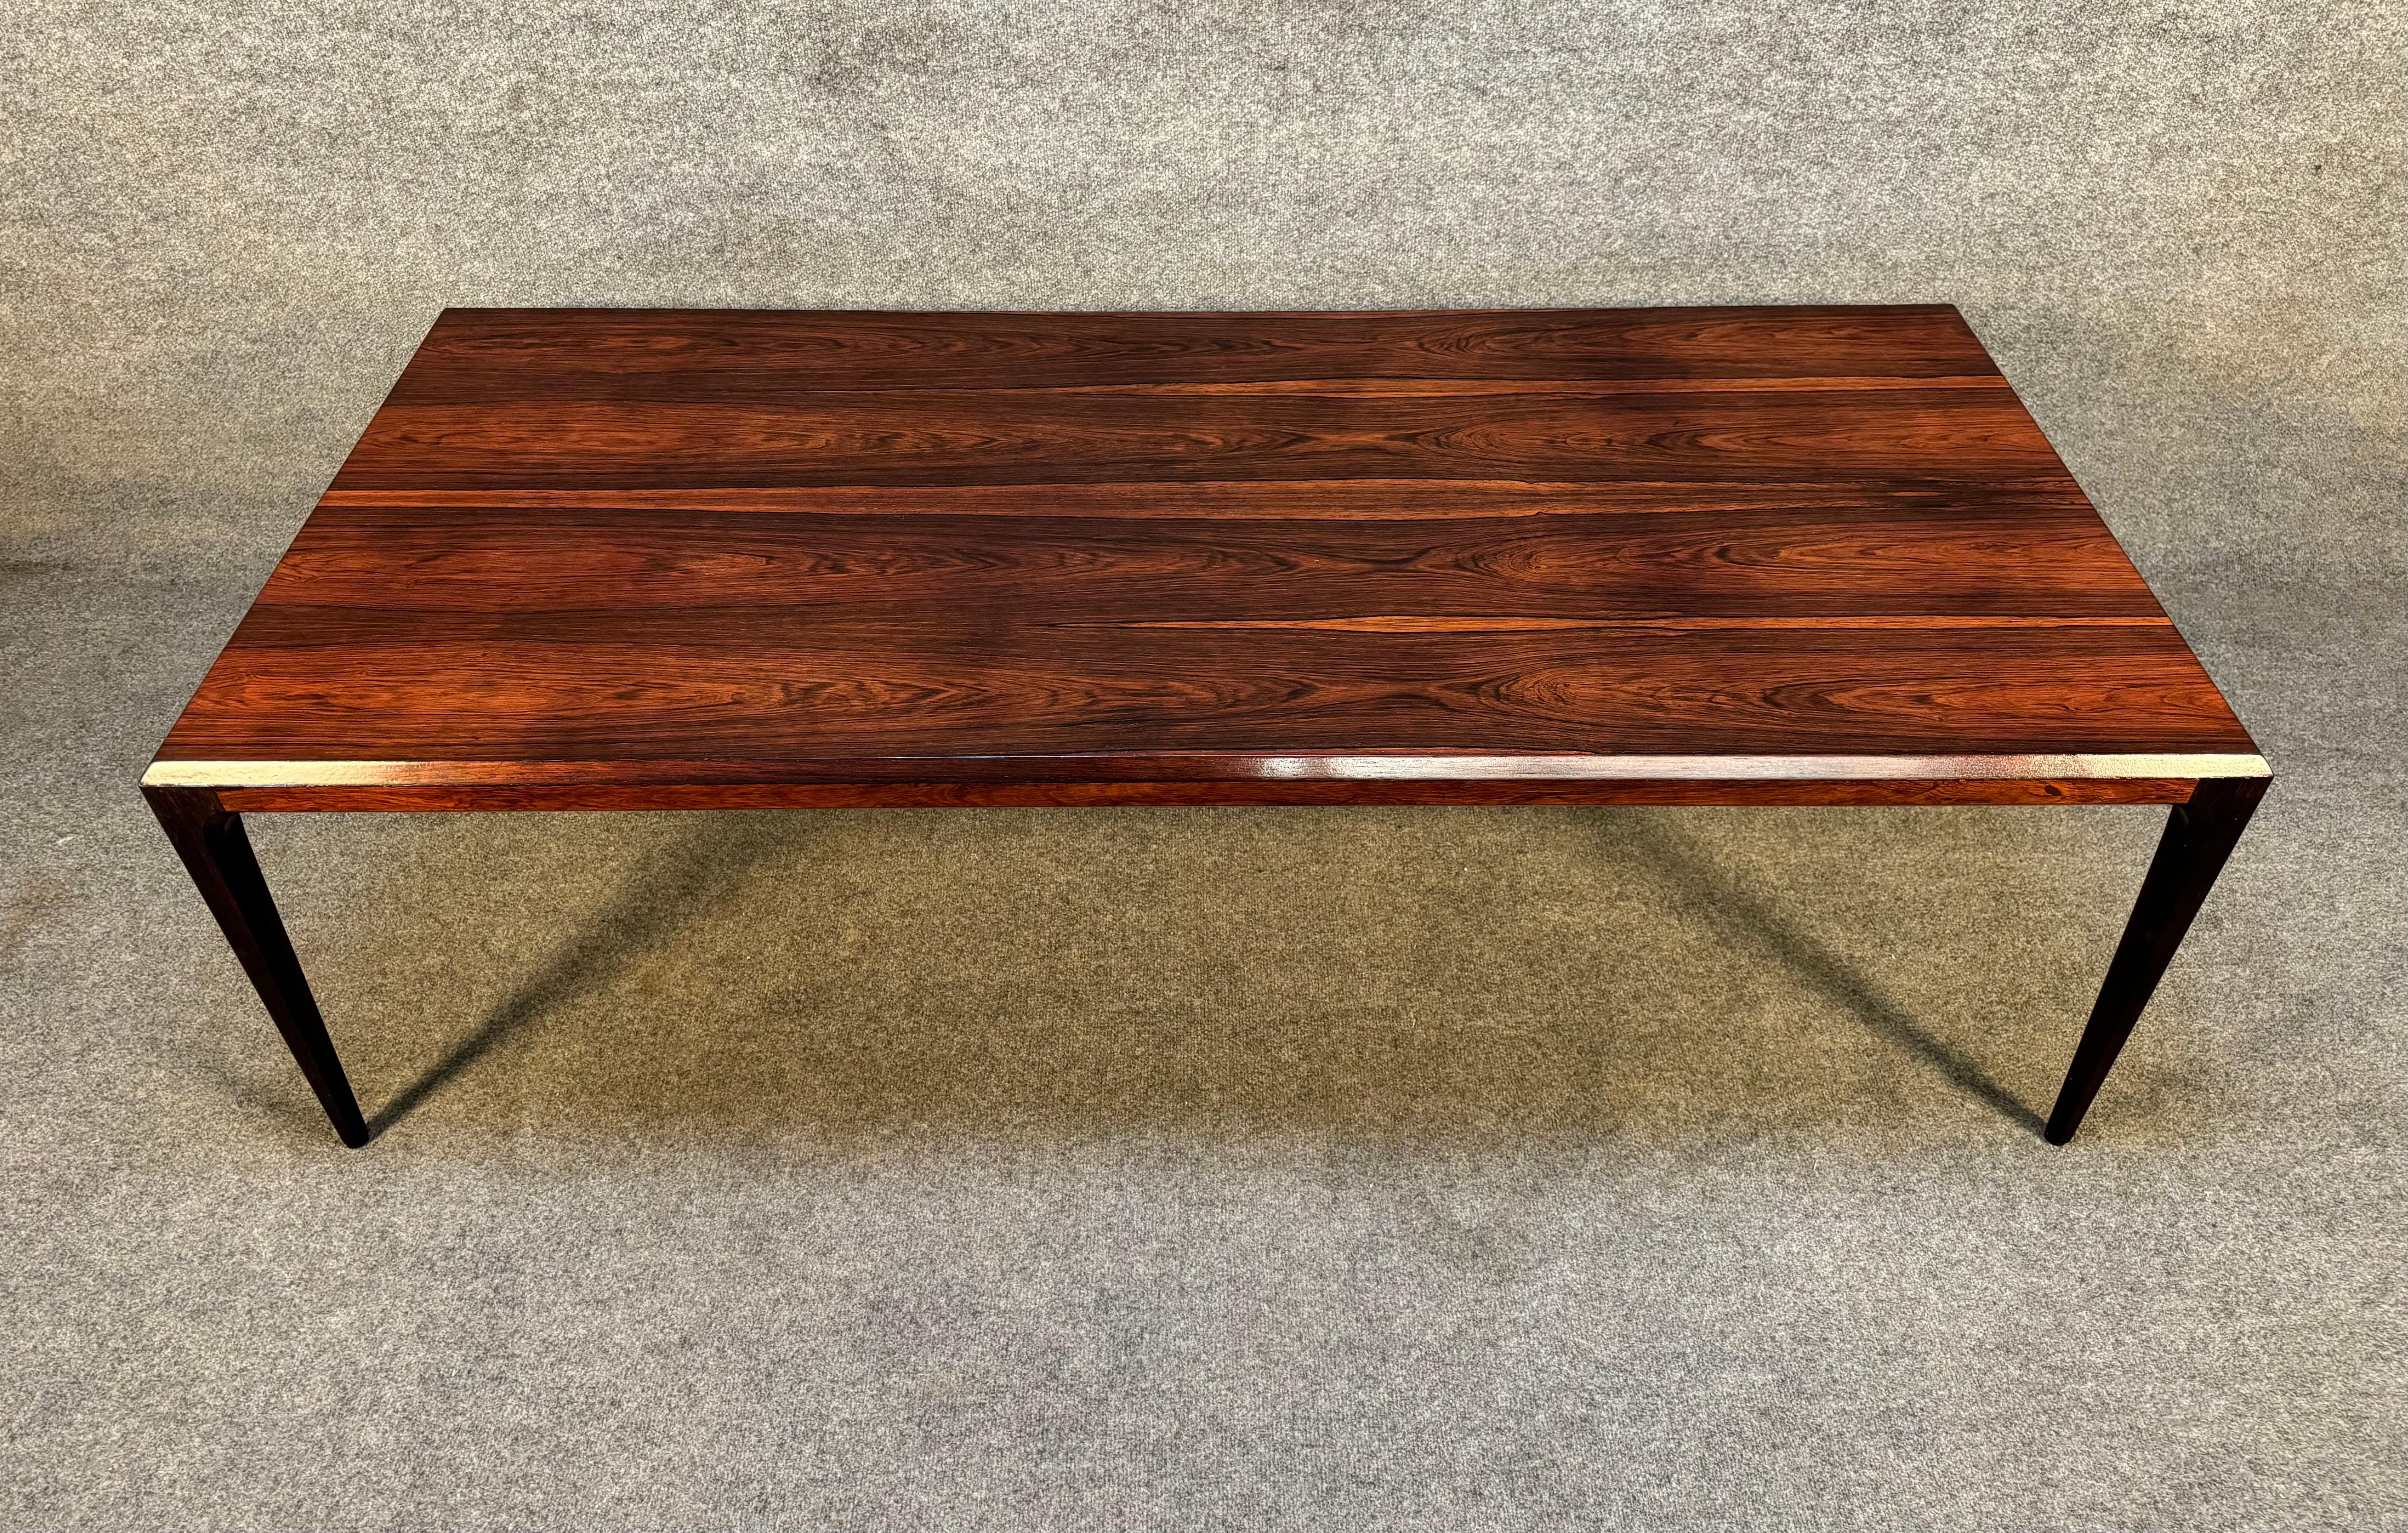 Hier ist ein schöner skandinavisch-moderner Cocktailtisch aus Palisanderholz, entworfen von Johannes Andersen und hergestellt von der CFC Mobelfabrik in Dänemark in den 1960er Jahren.
Dieser schöne Tisch, der vor kurzem aus Europa nach Kalifornien